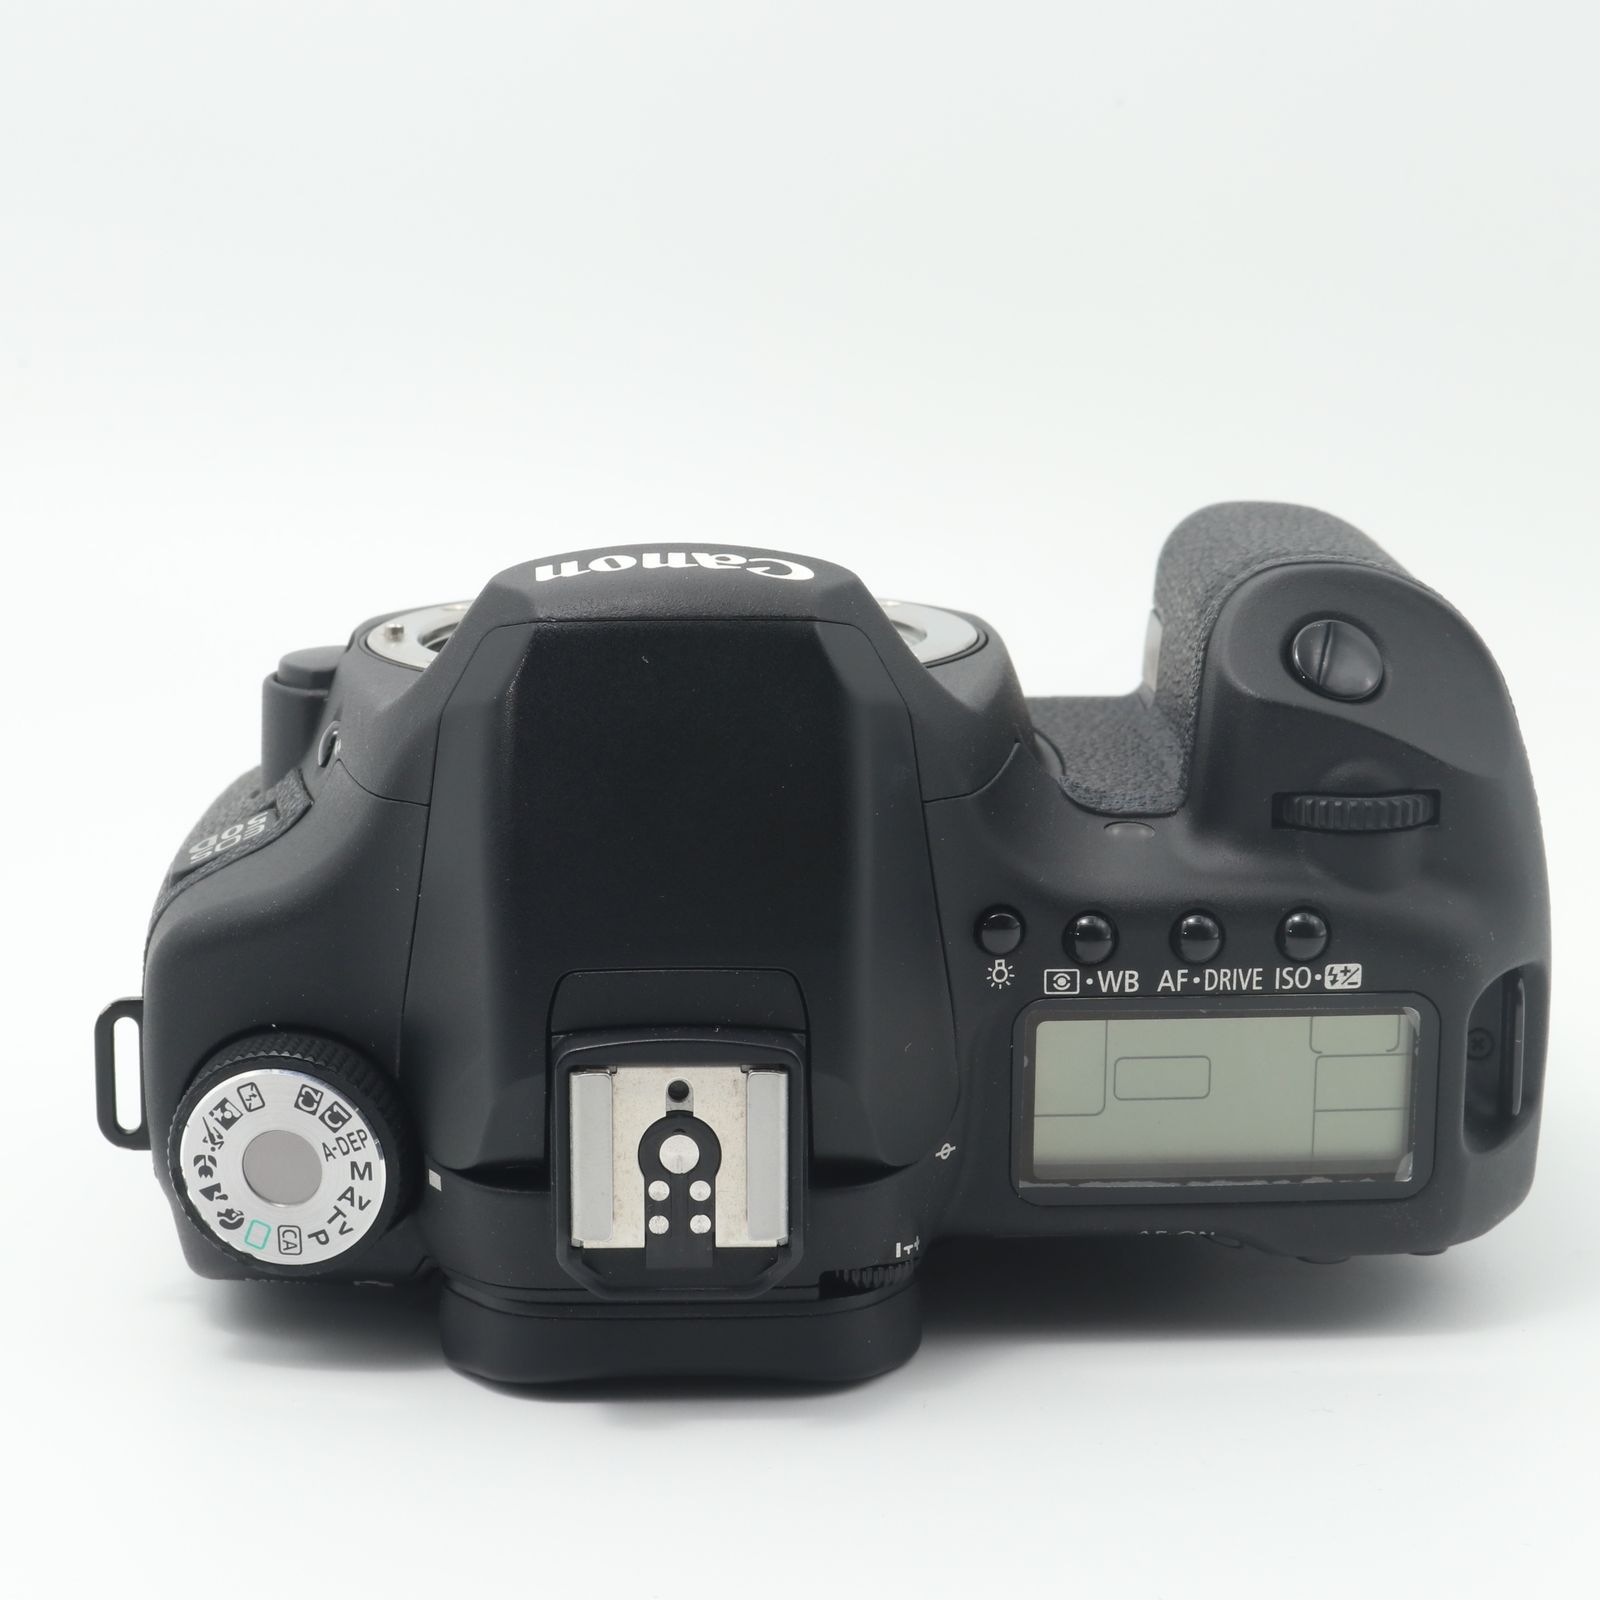 難品】Canon デジタル一眼レフカメラ EOS 50D ボディ EOS50D SOREA＠カメラ機材リユースショップ メルカリ